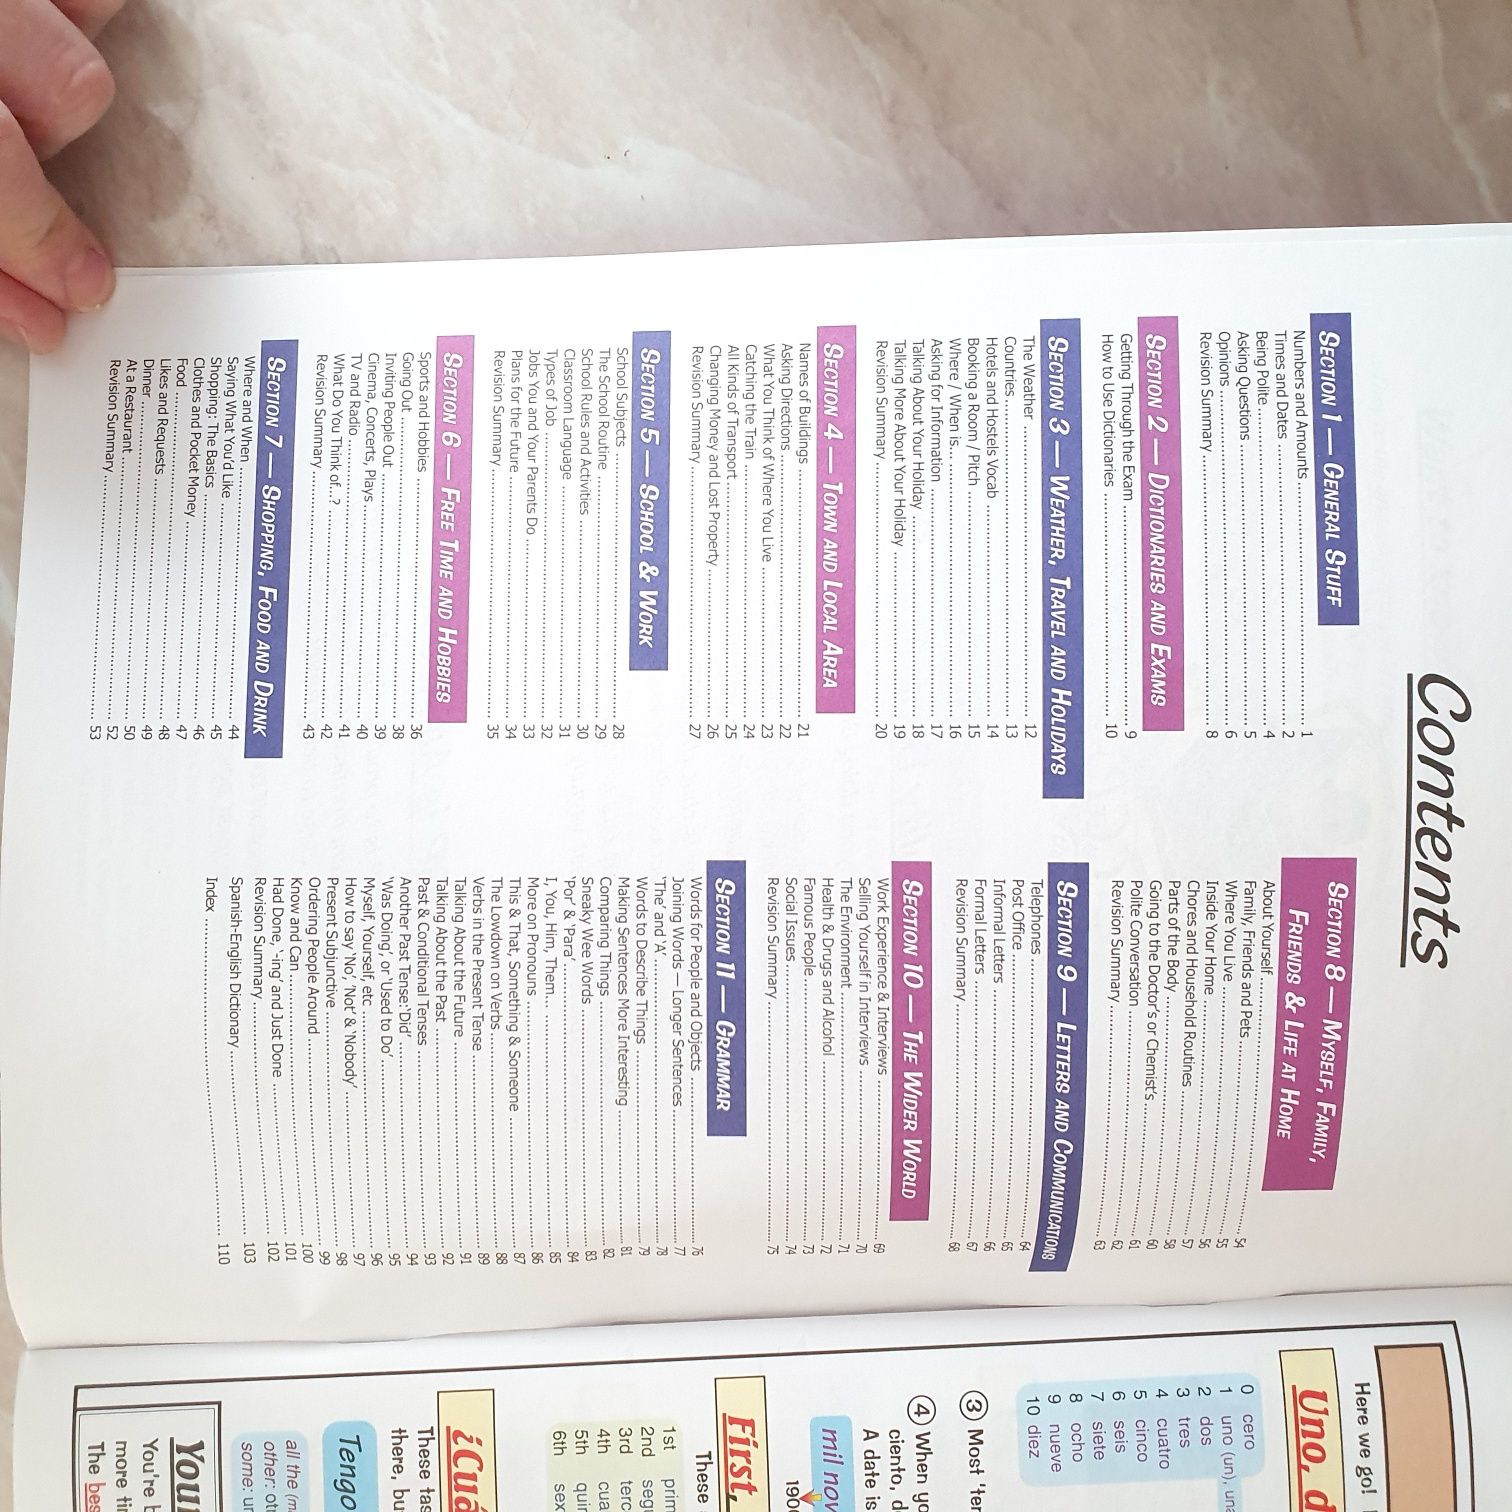 GCSE Spanish revision guide Учебник по испанскому, рабочая тетрадь